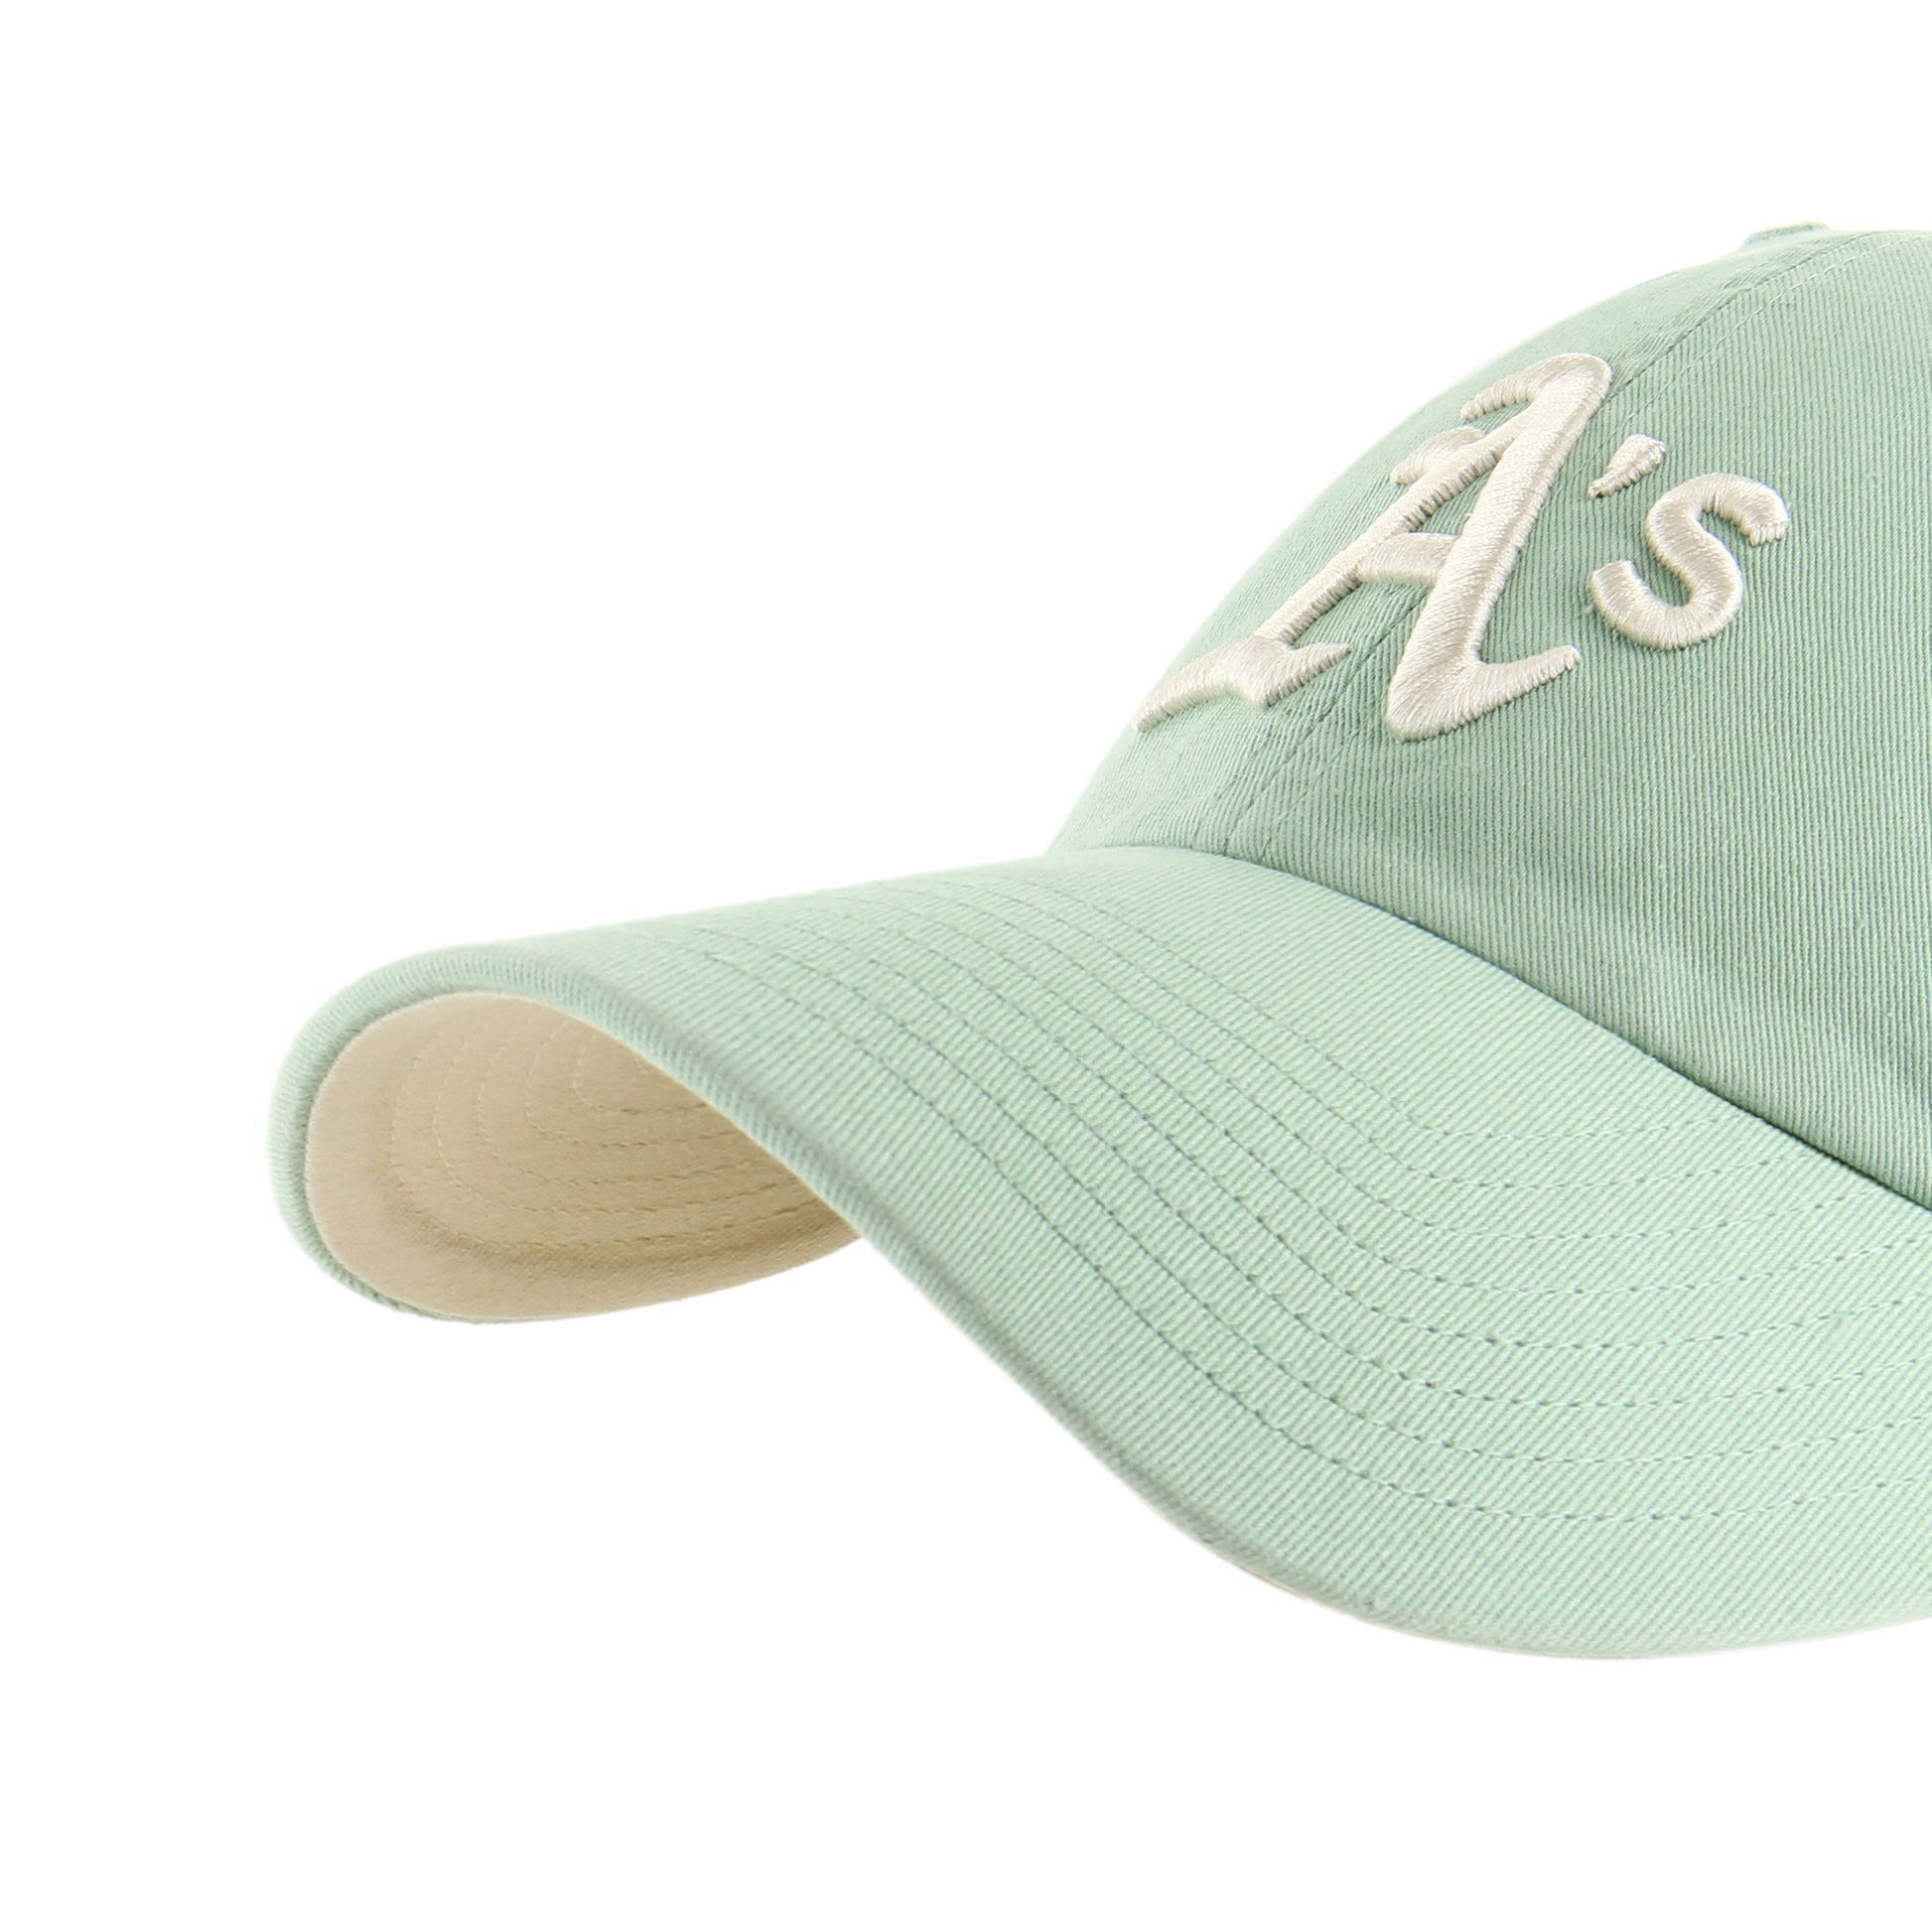 47 Brand MLB NY Yankees Clean Up Cap - Natural Cream